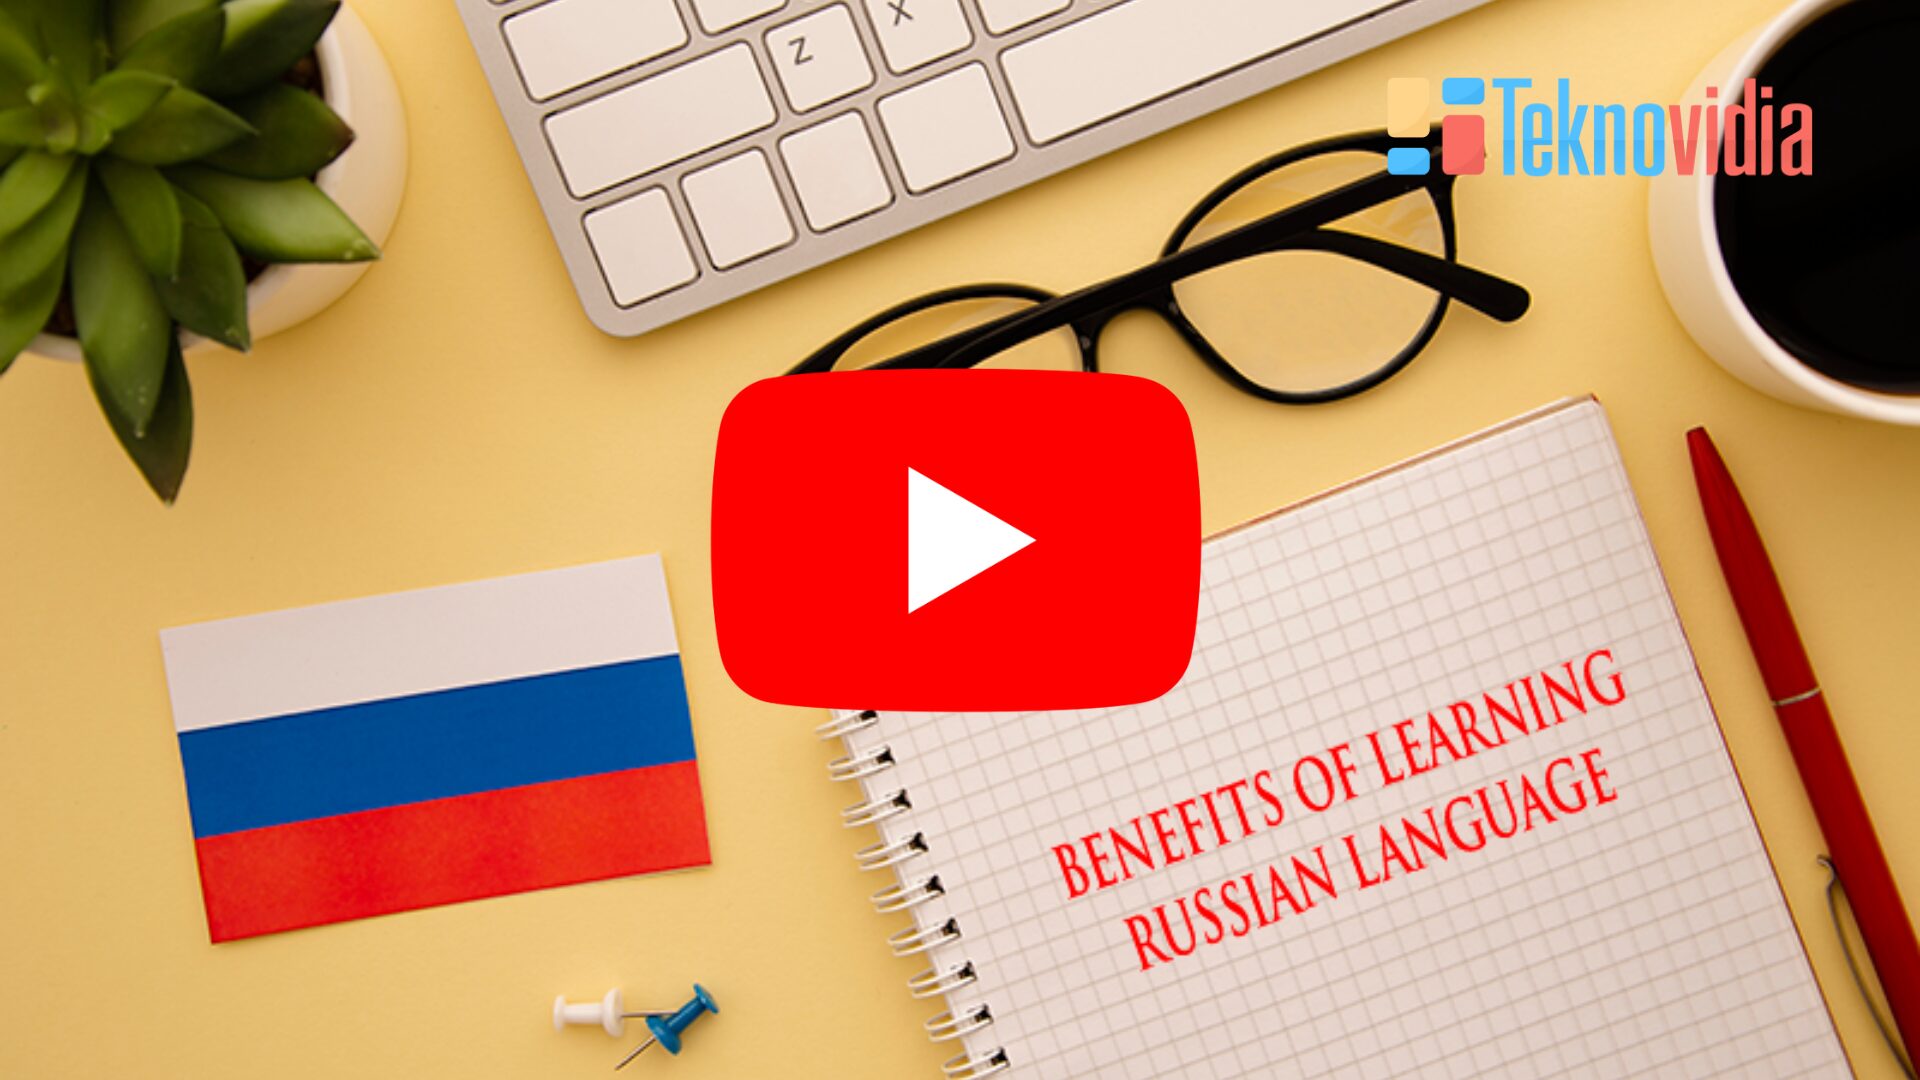 channel youtube untuk belajar bahasa rusia